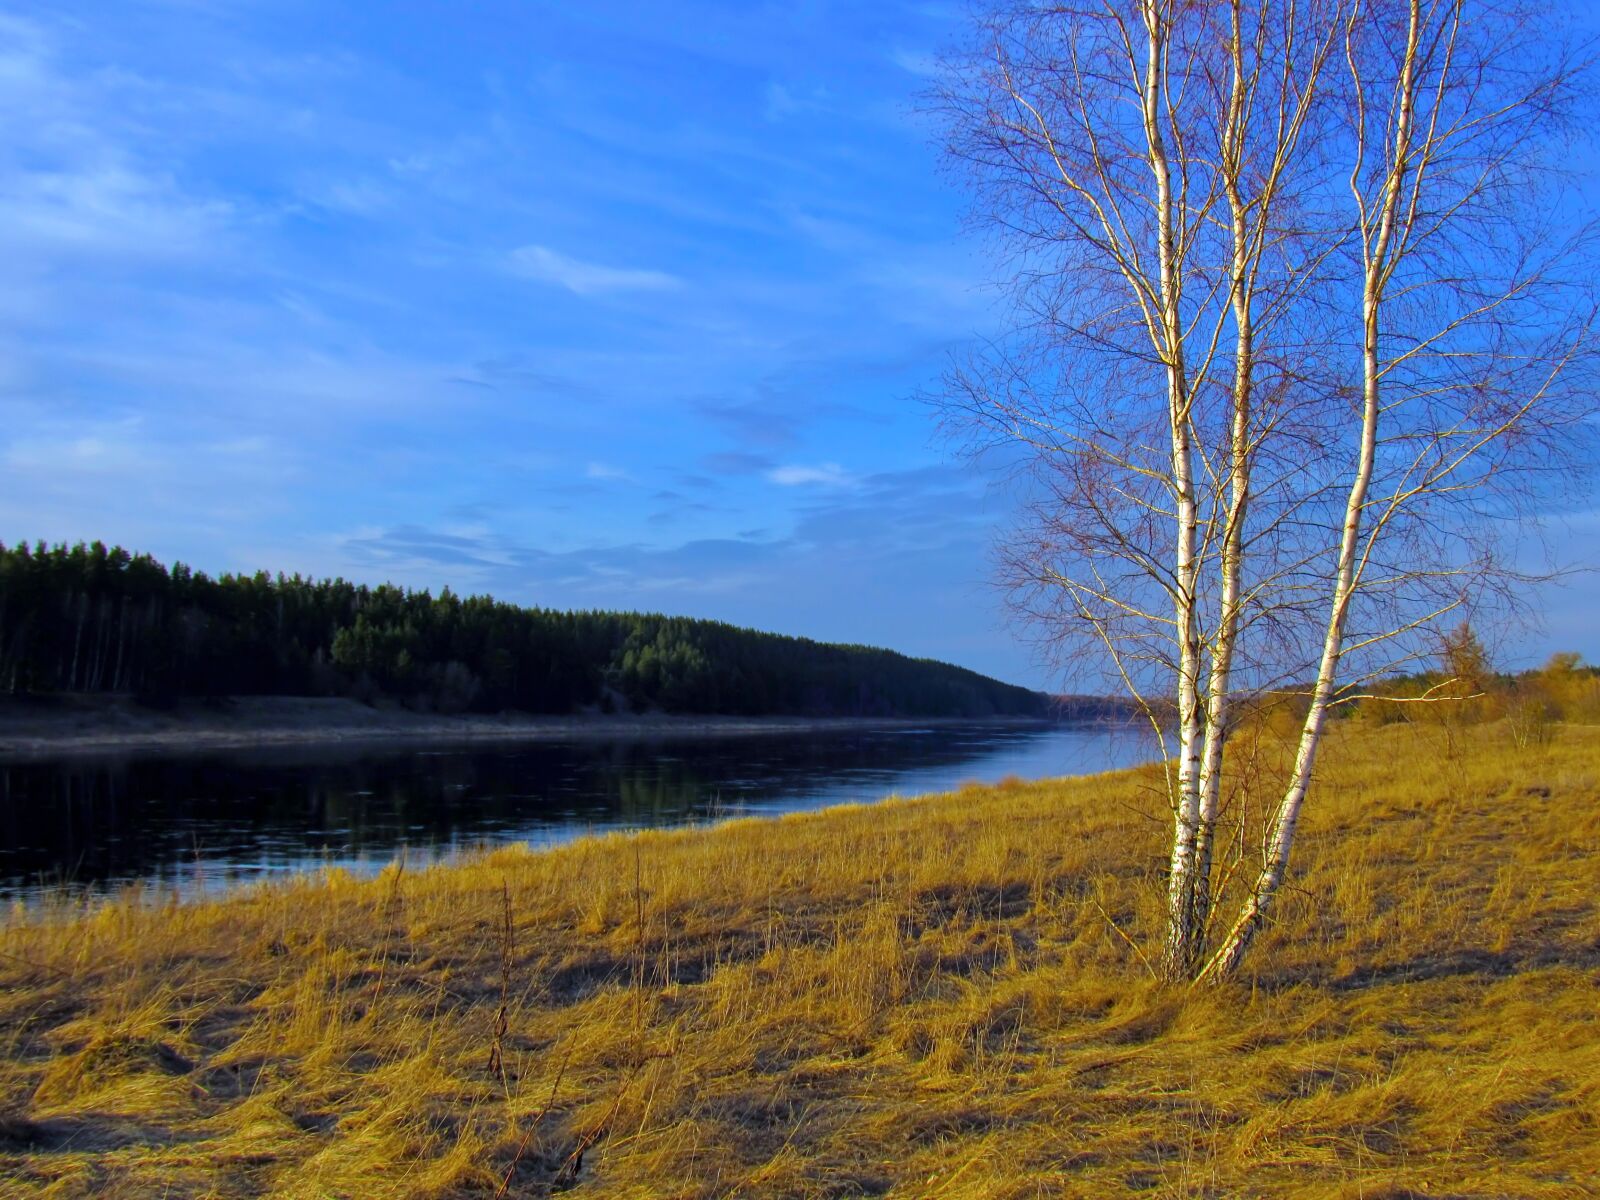 Canon PowerShot SX520 HS sample photo. Landscape, spring, autumn photography